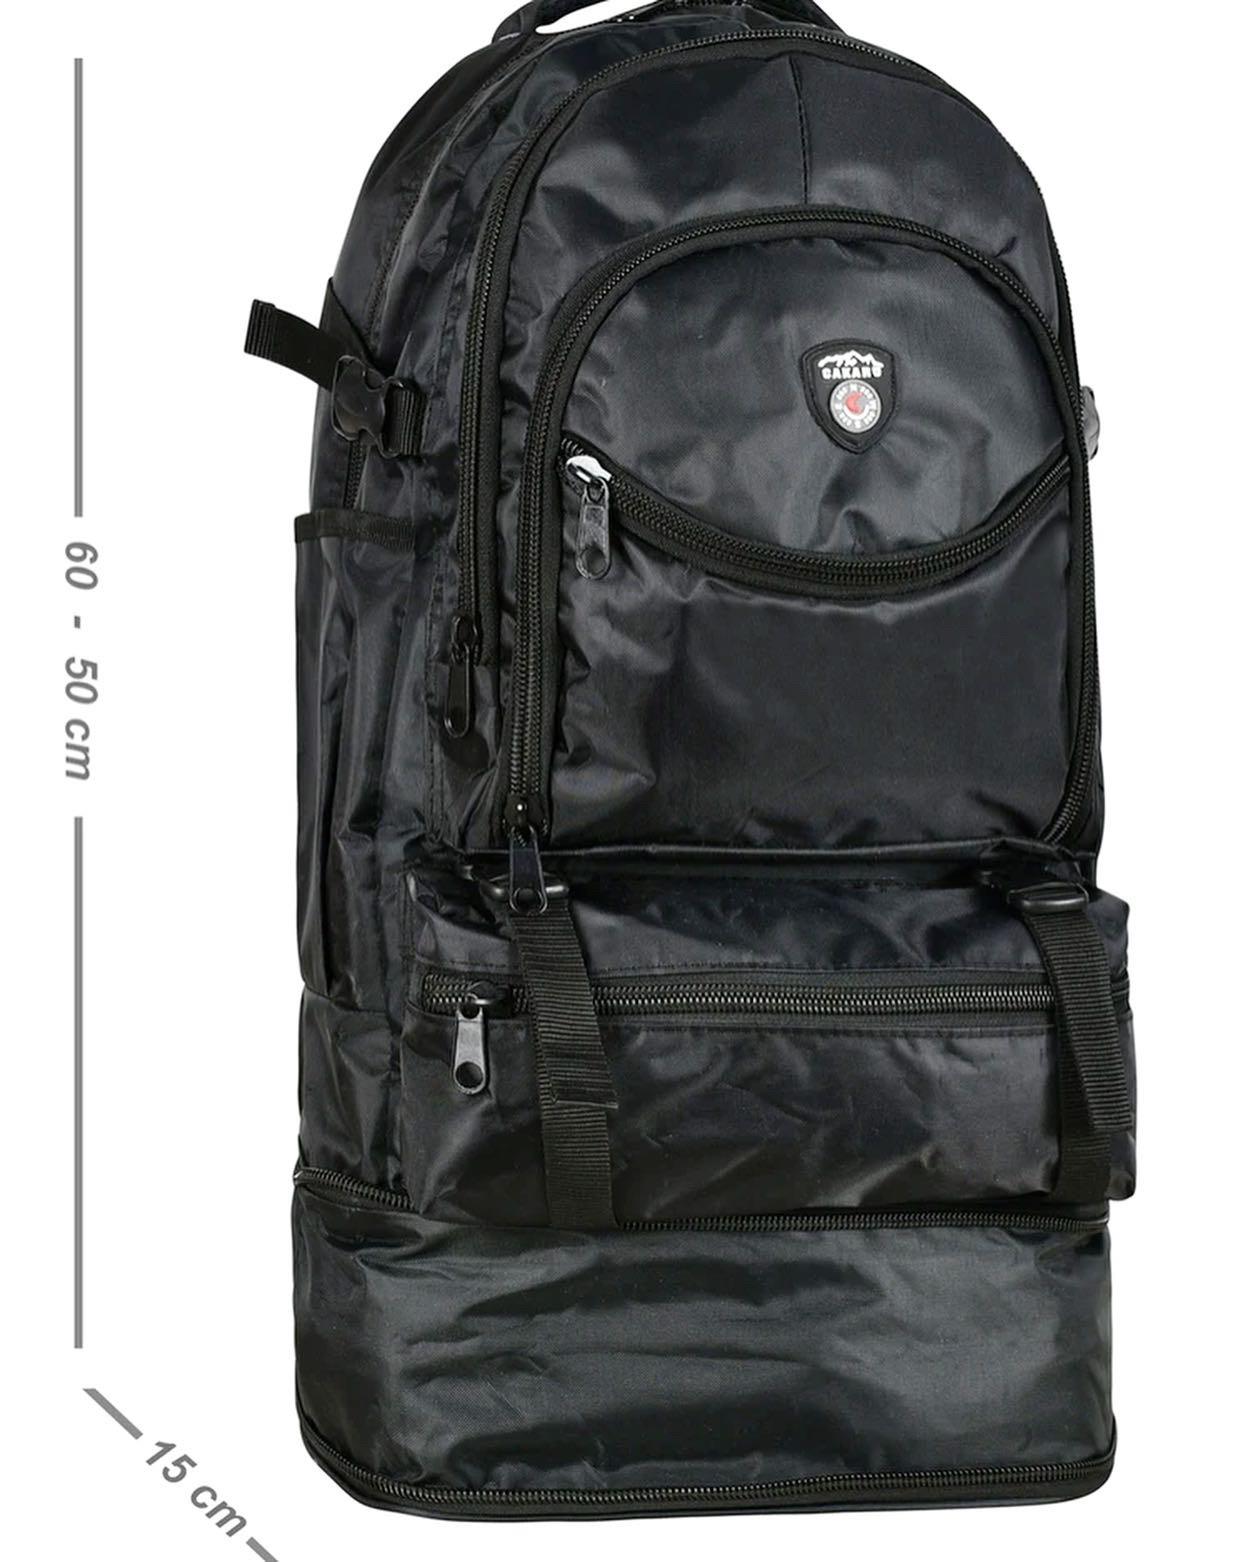 Körüklü dağcı cakard sırt çantası büyük ebat 65 boyu eni 33  |elizabell.com.tr